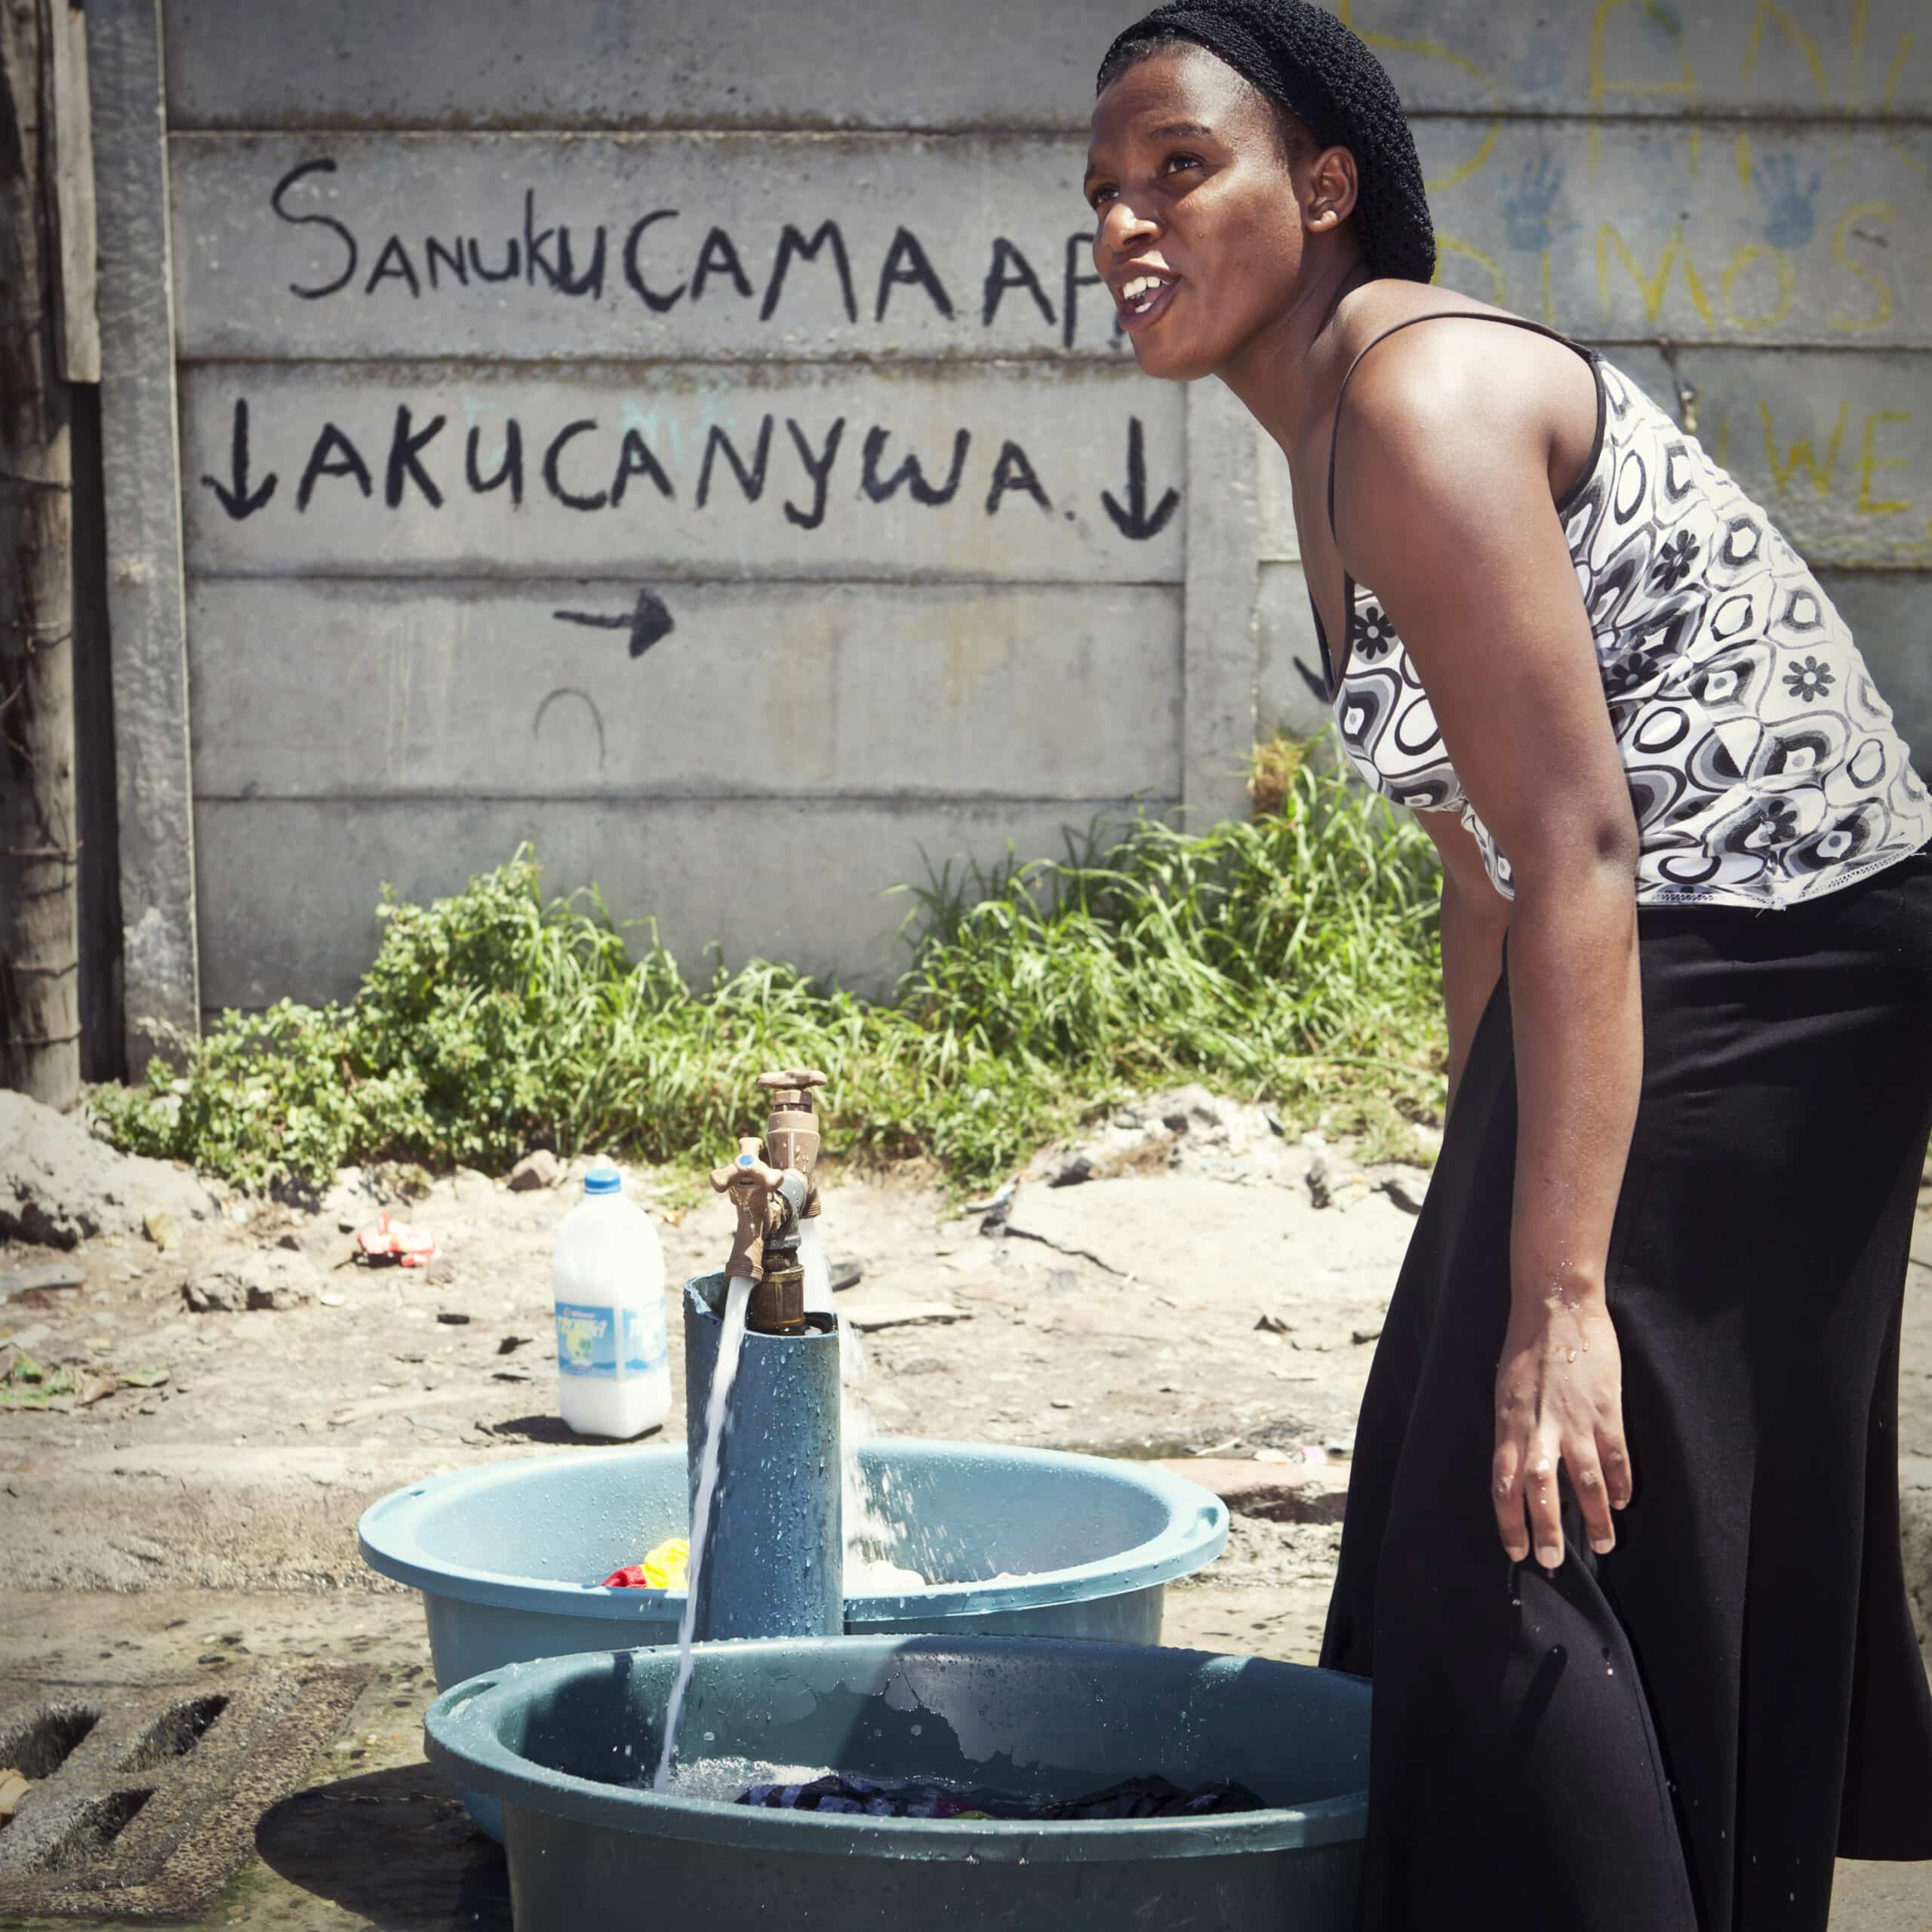 Eine Frau wäscht ihre Wäsche an einem Wasserhahn im Freien, der über mehrere mit Wasser gefüllte Becken verfügt. Ein Graffiti an der Wand hinter ihr enthält eine Botschaft in einer afrikanischen Sprache. © Fotografie Tomas Rodriguez